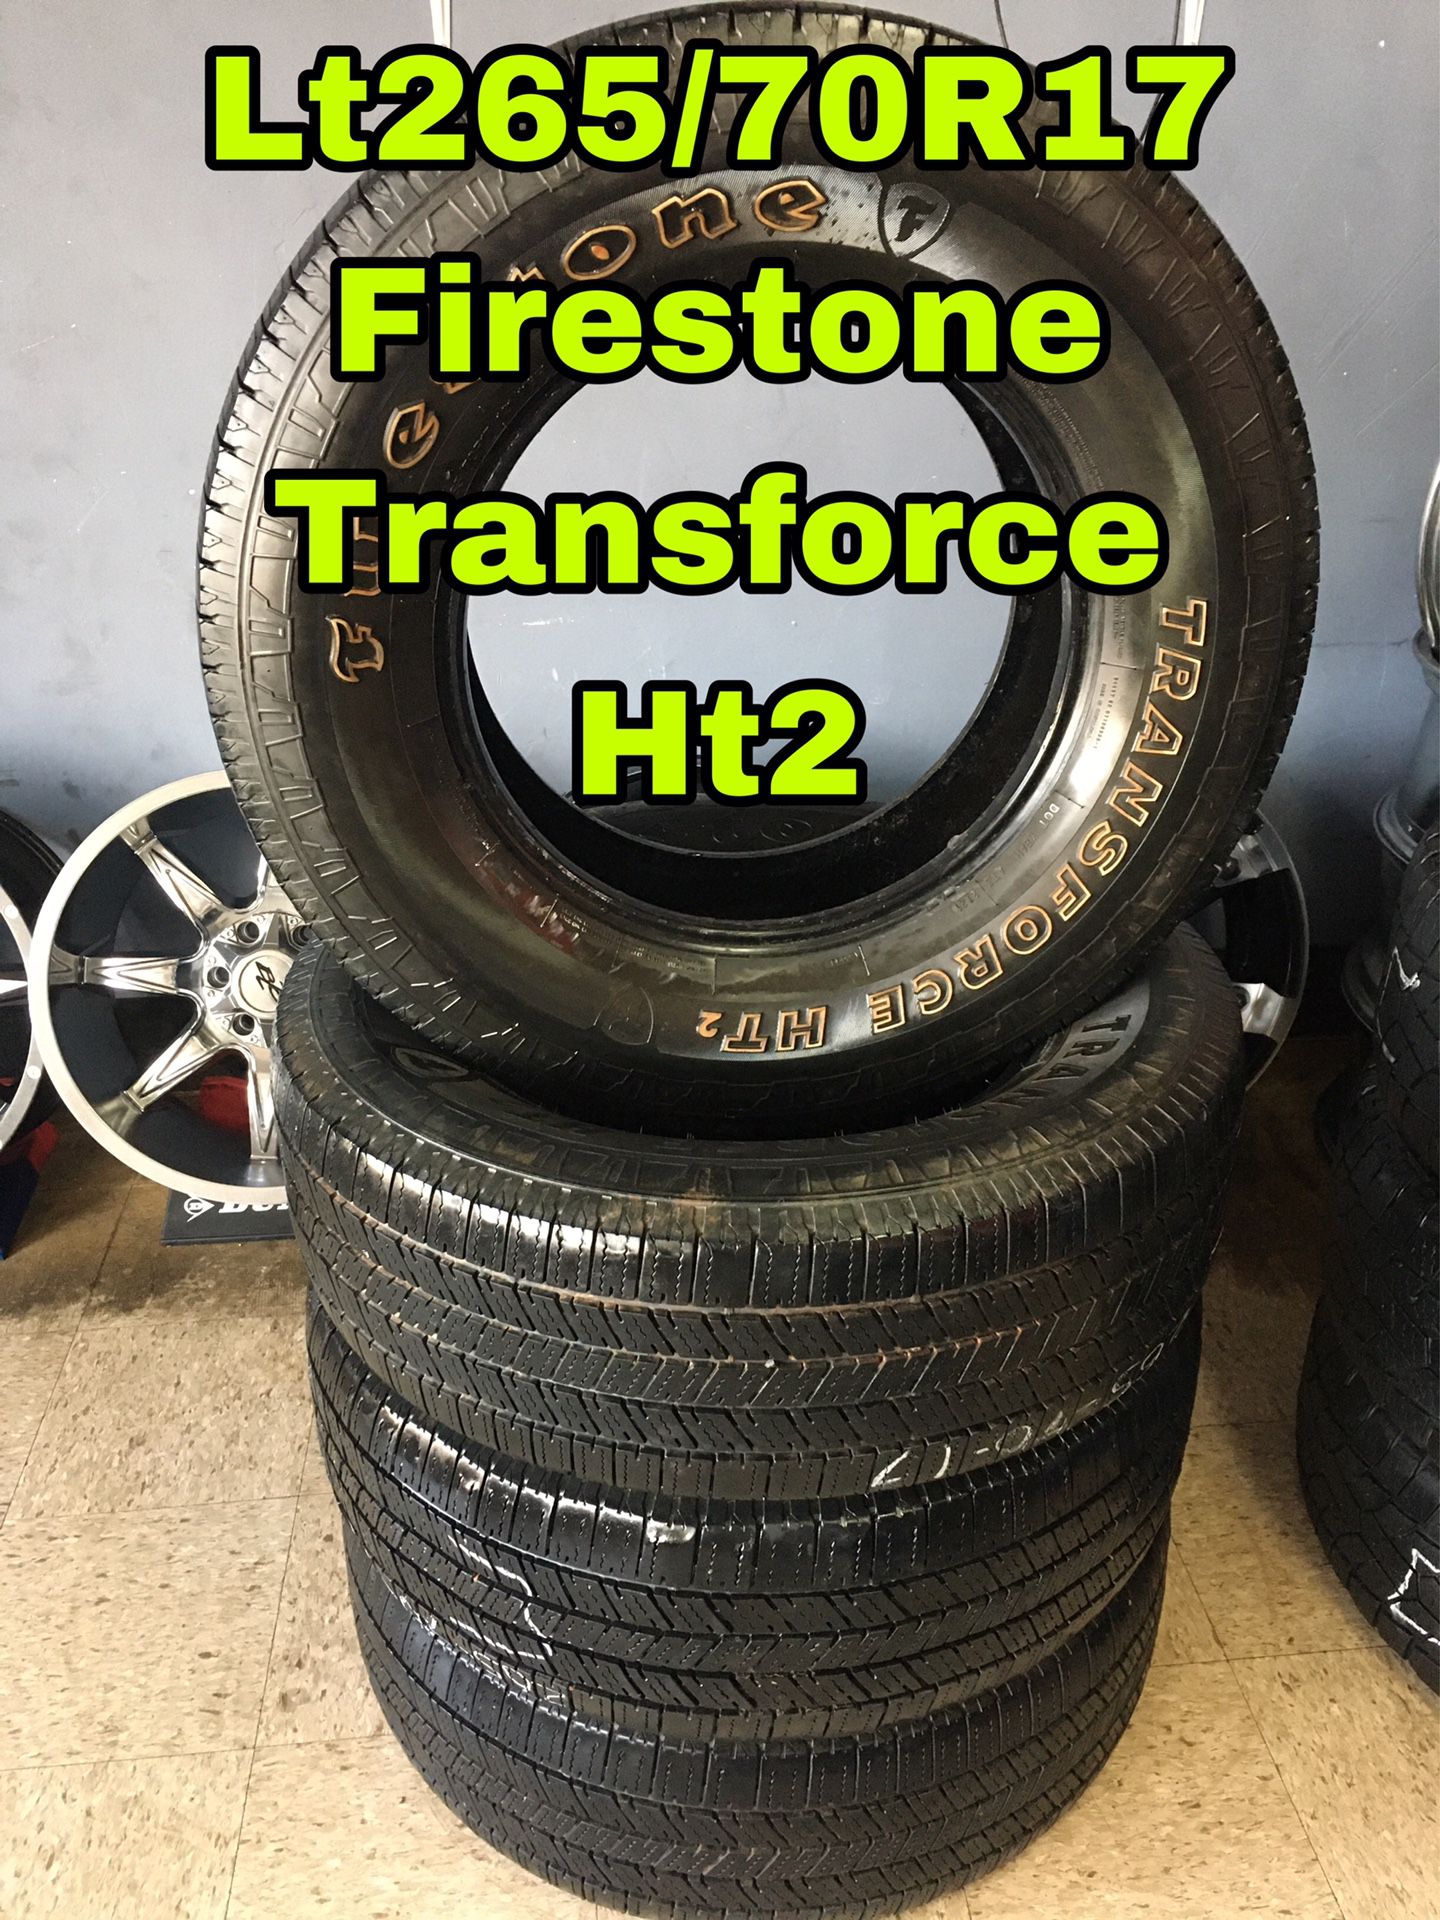 Lt265/70R17 Firestone Transforce